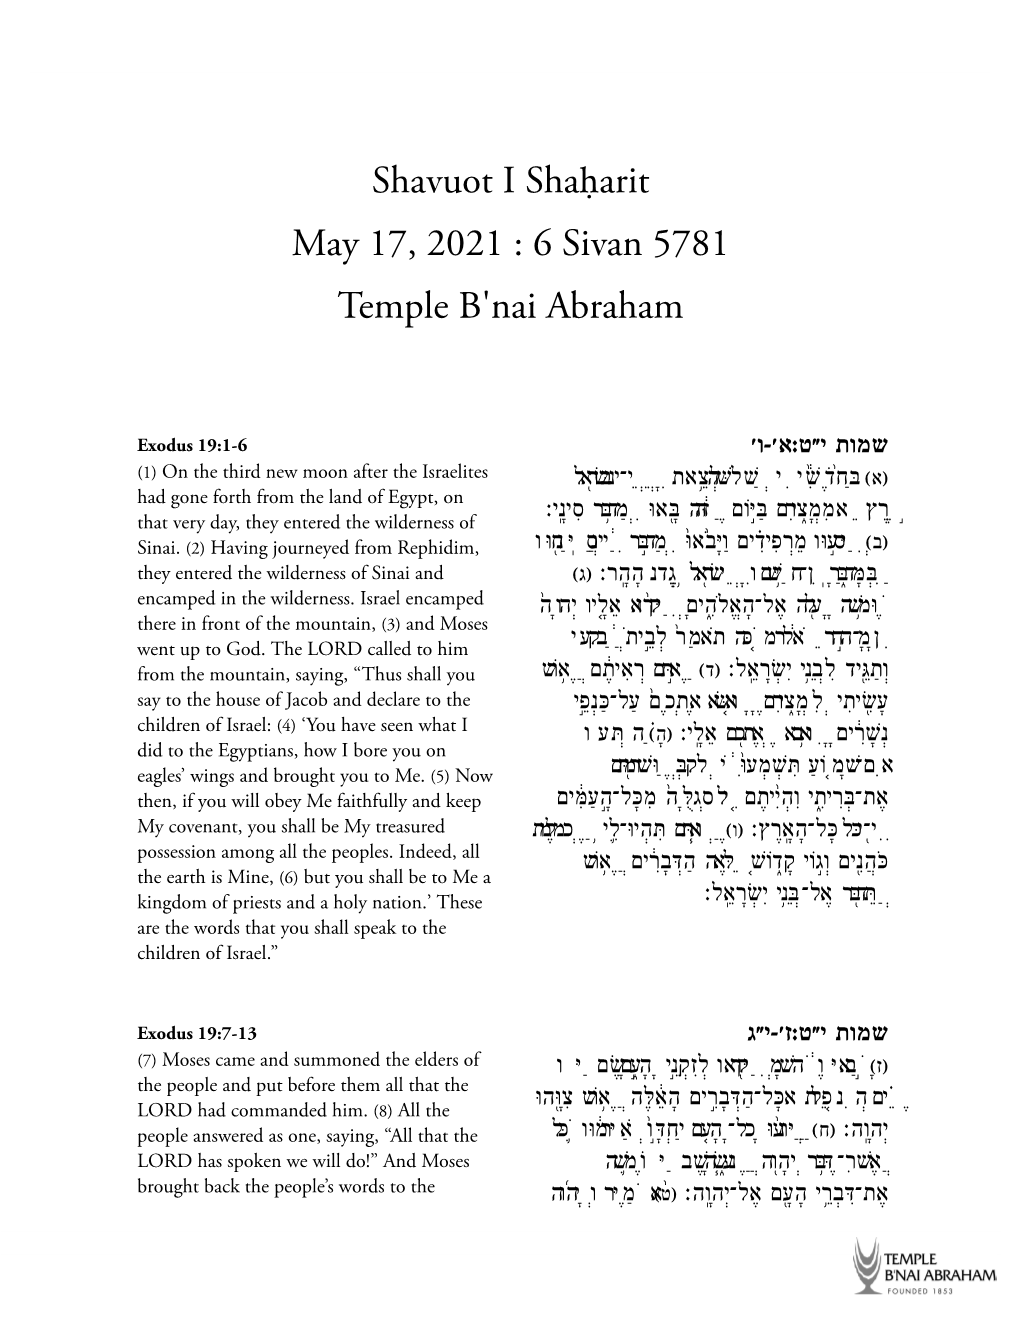 Shavuot I Shaḥarit May 17, 2021 : 6 Sivan 5781 Temple B'nai Abraham | Sefaria 5/13/21, 10:01 AM